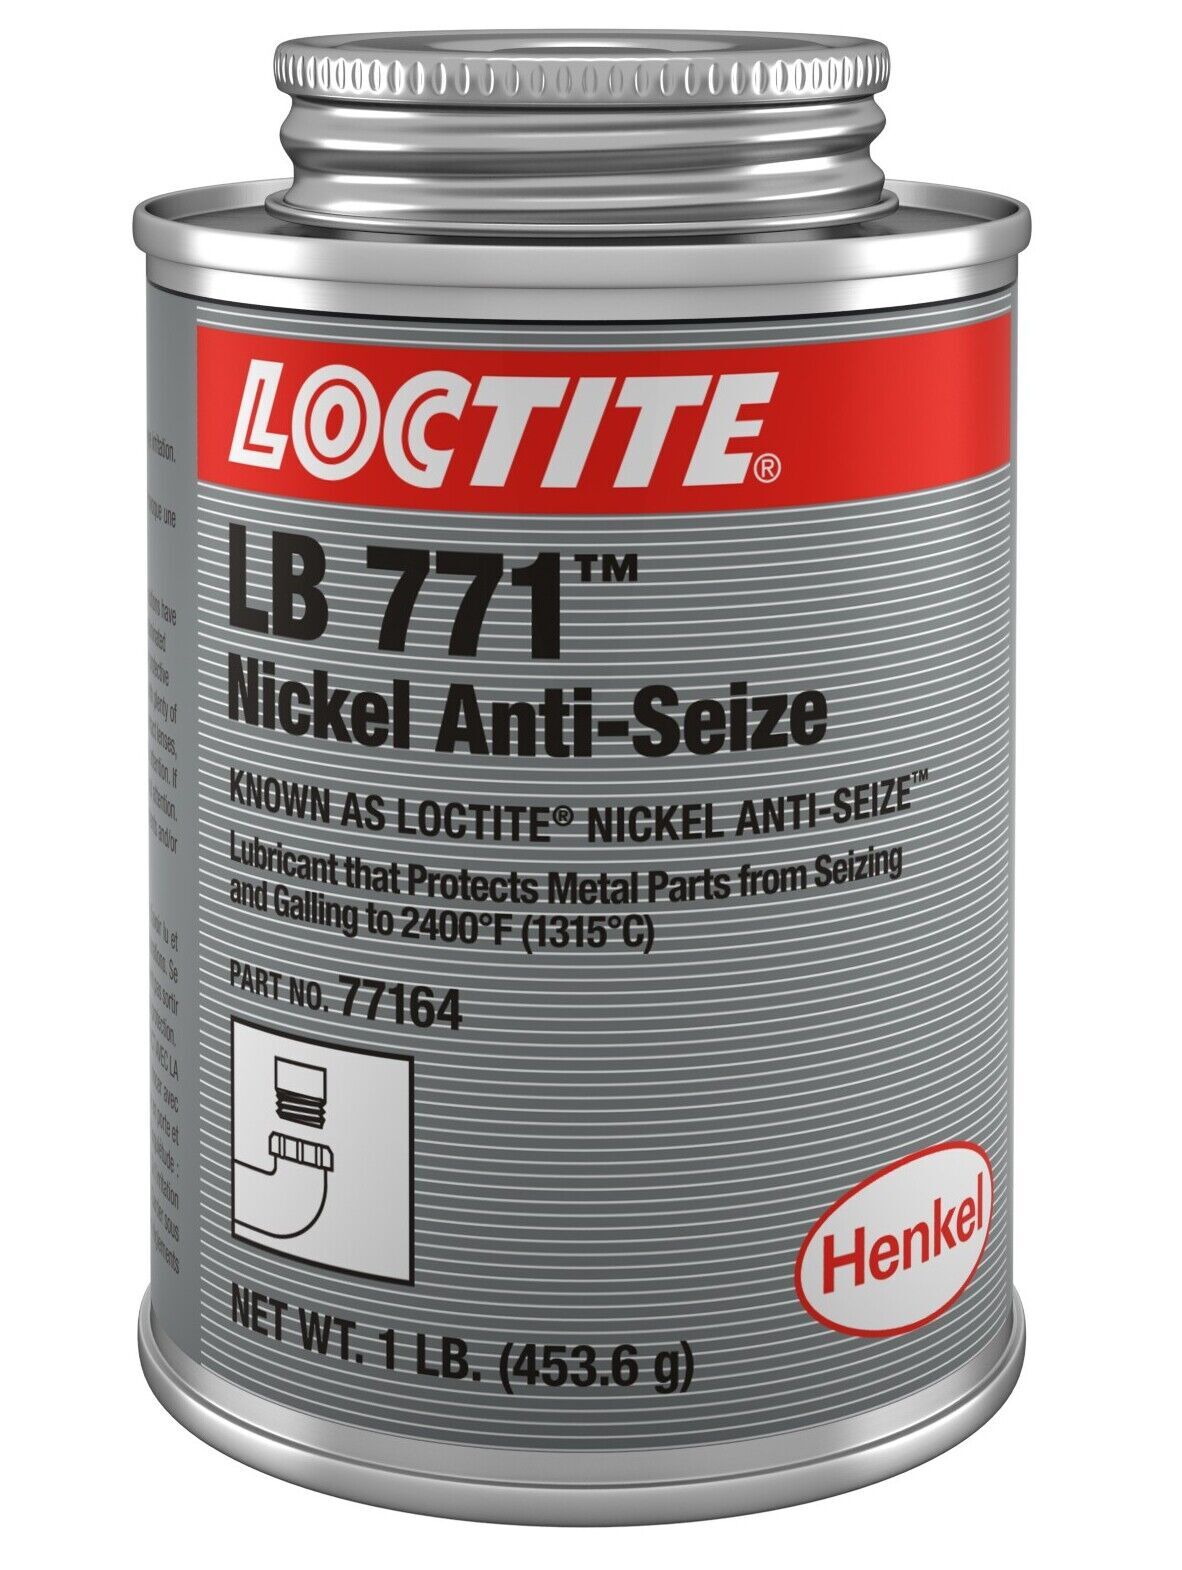 LOCTITE LB 771 หรือ 77164 (Nickel Anti-Seize) สารหล่อลื่นป้องกันการจับติดแอนติซิสช์ ช่วยป้องกันสนิม การกัดกร่อน การจับติด และการขูดขีดช่วยให้ชิ้นส่วนหล่อลื่นได้แม้ในสภาพแวดล้อมรุนแรง ปนเปื้อนด้วยสารเ